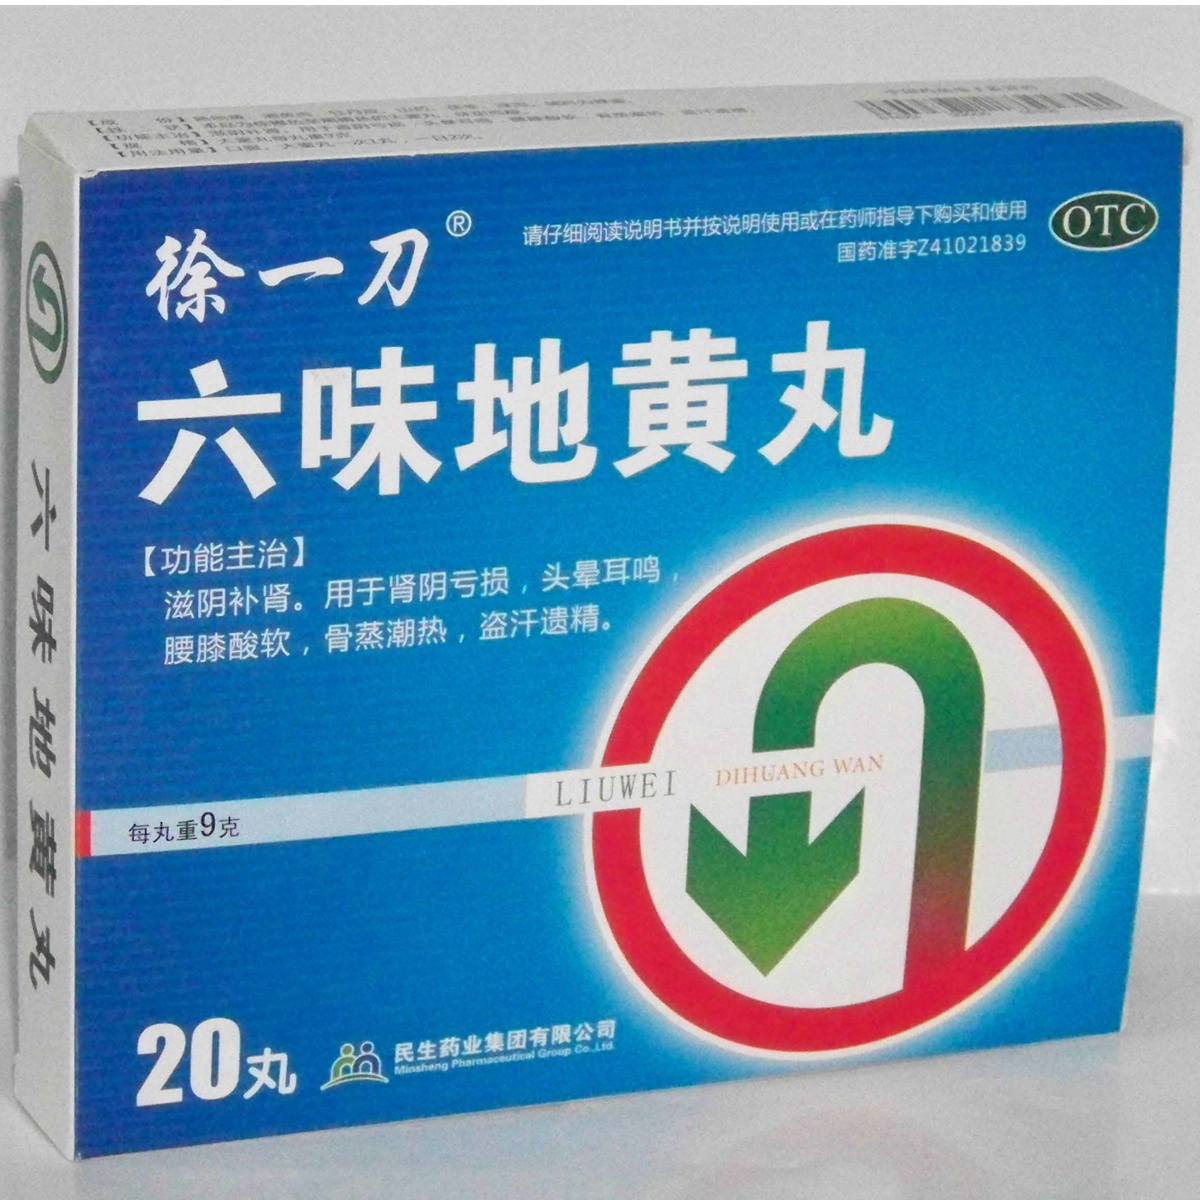 【民生】六味地黄丸-民生药业集团有限公司